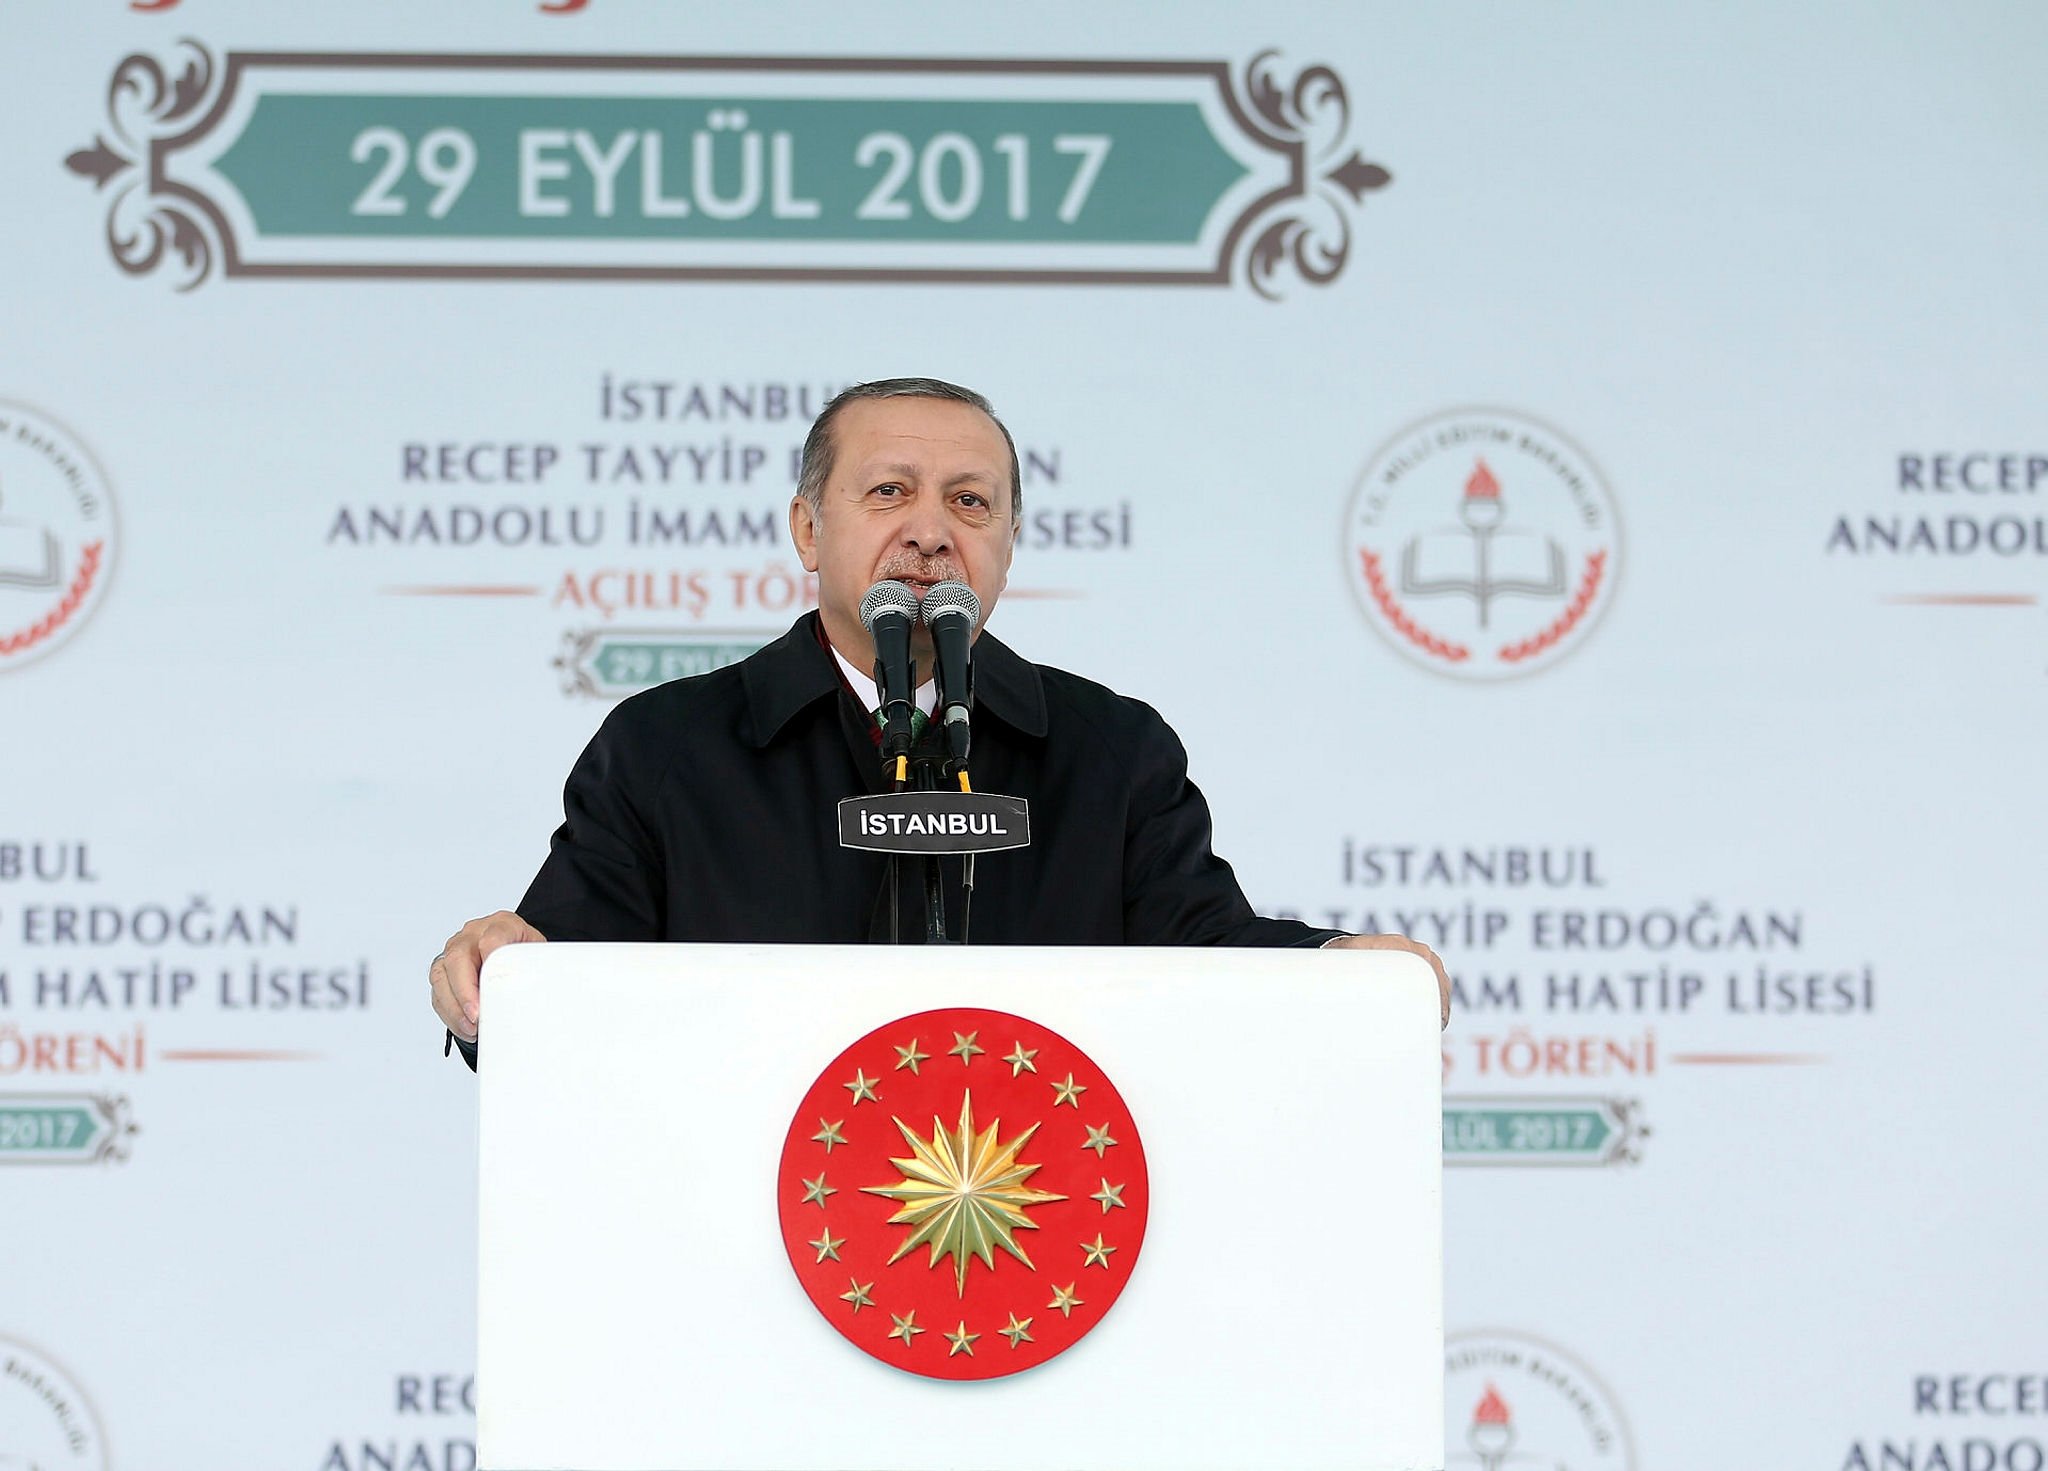 Cumhurbaşkanı Erdoğan, mezun olduğu okulda açıkladı - Aktüel Haberleri